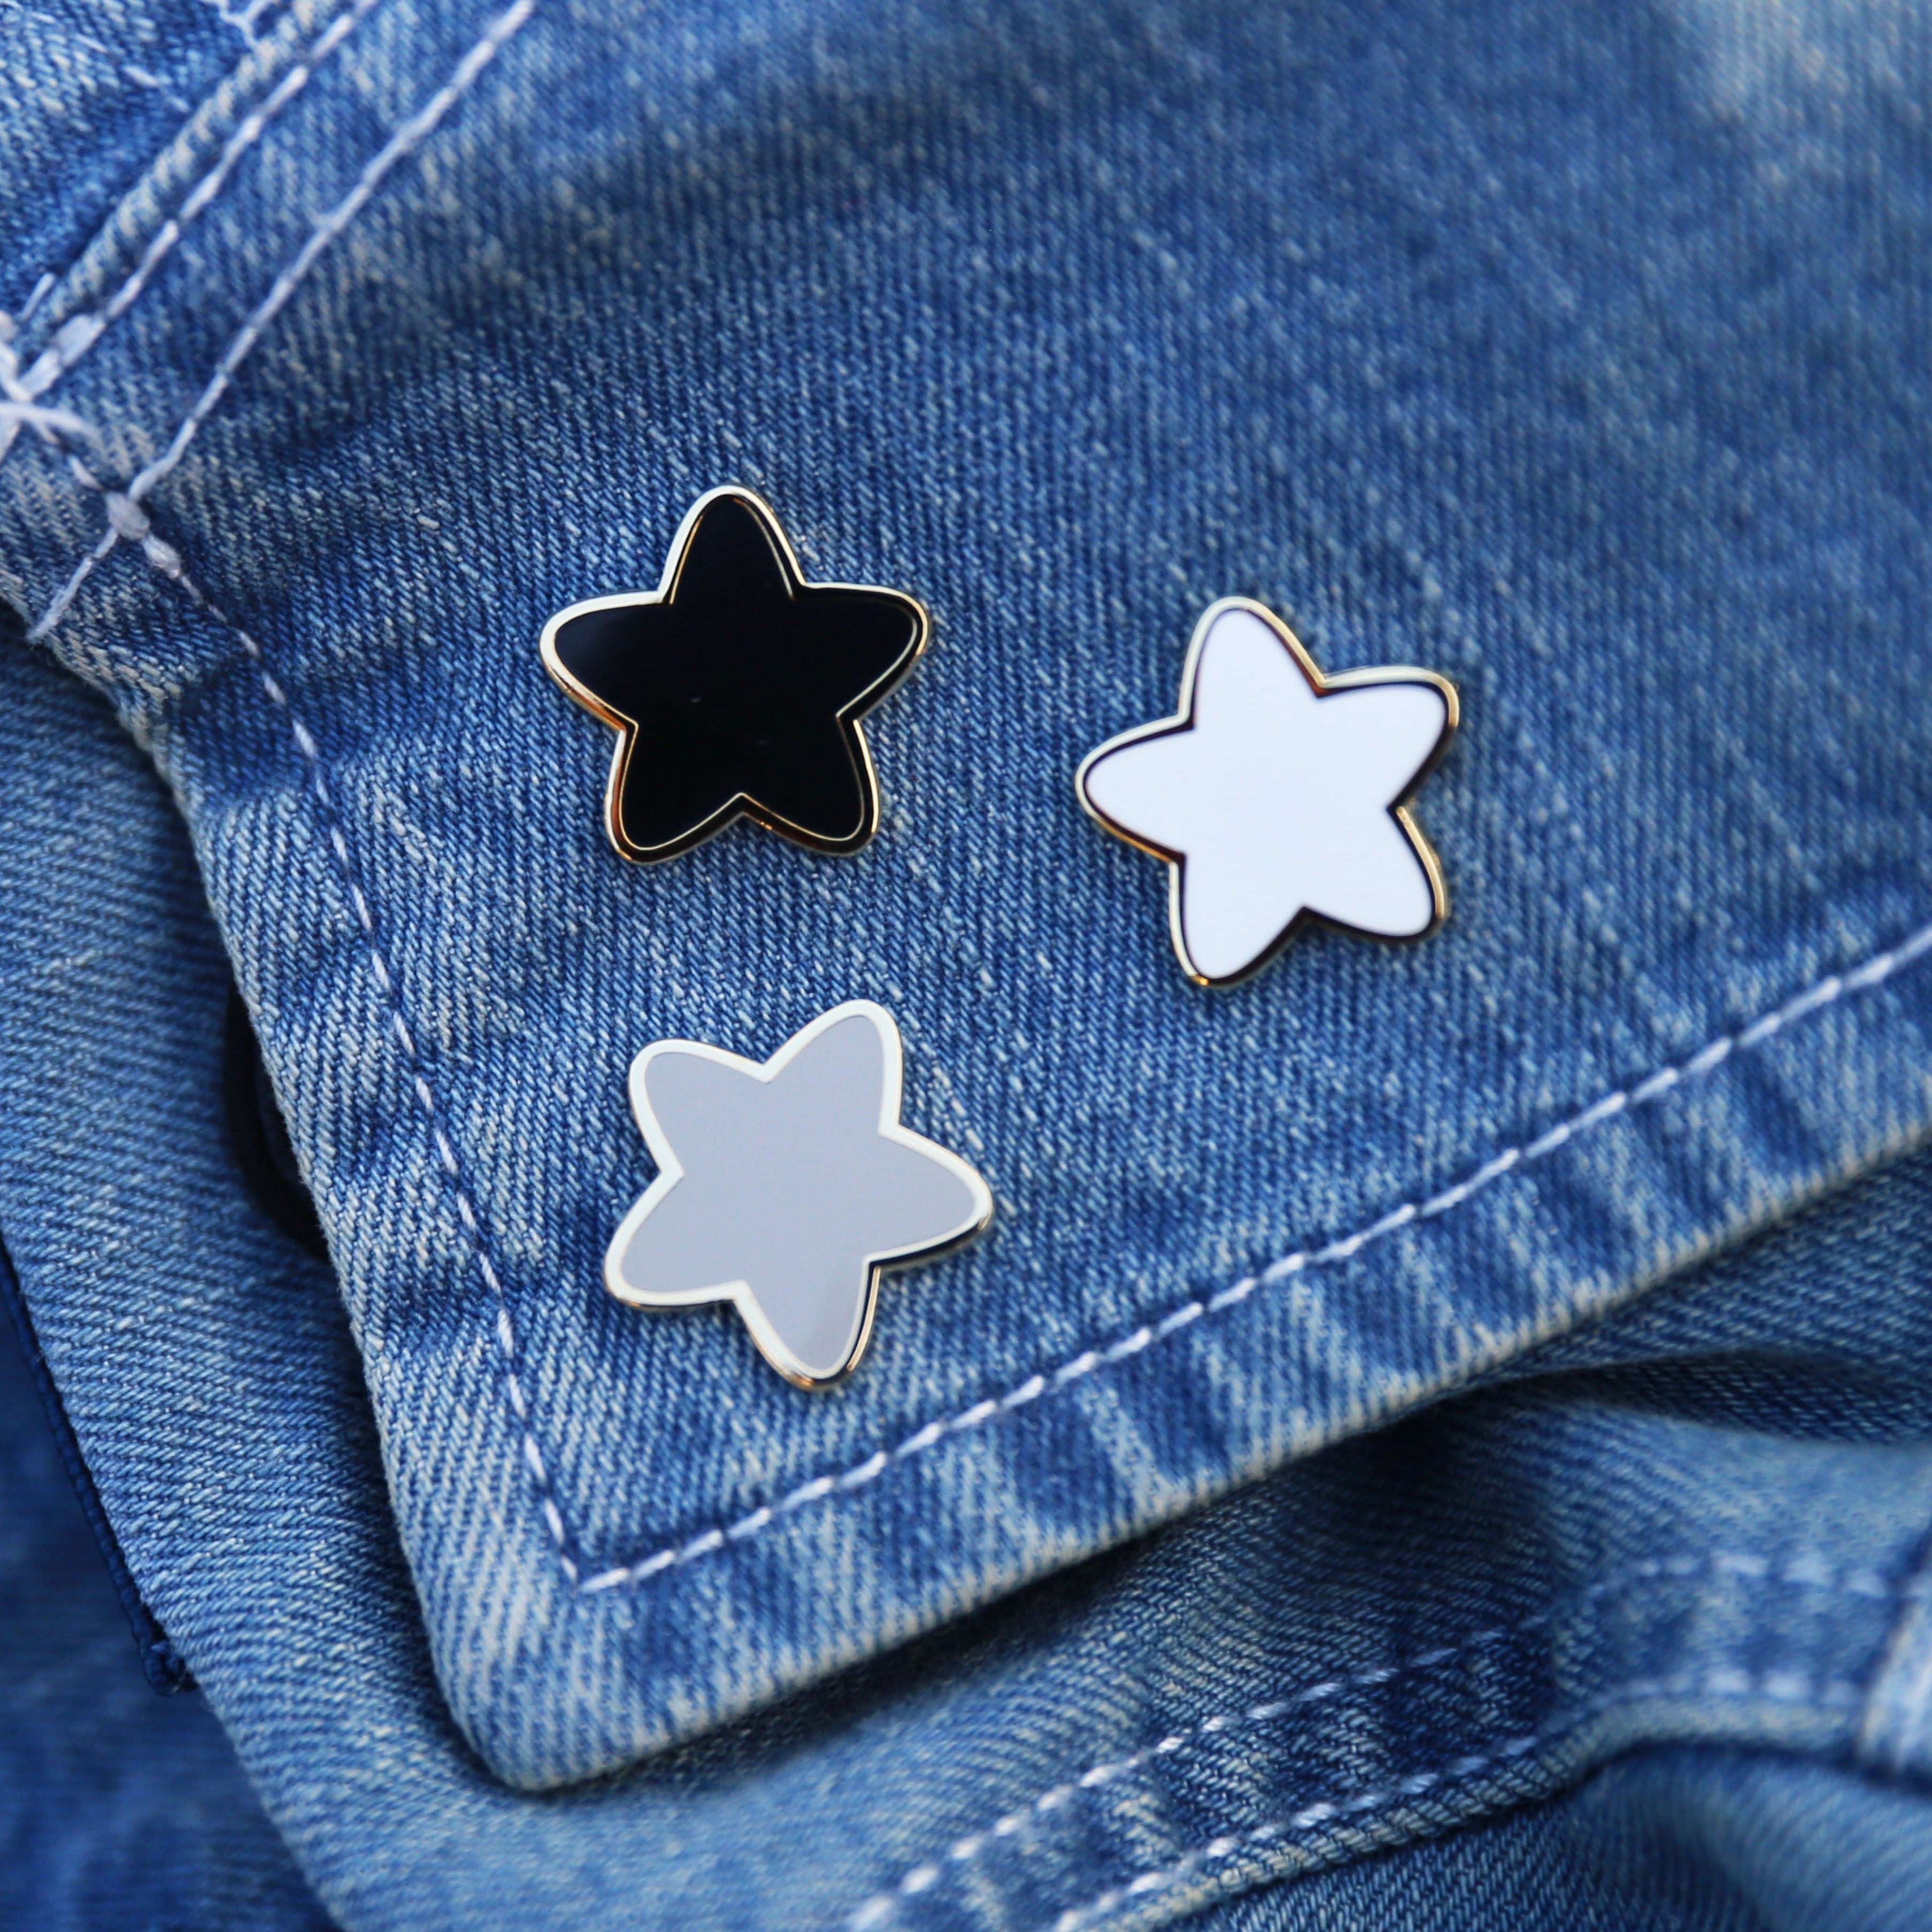 Cute Star Monochrome Enamel Pin Set